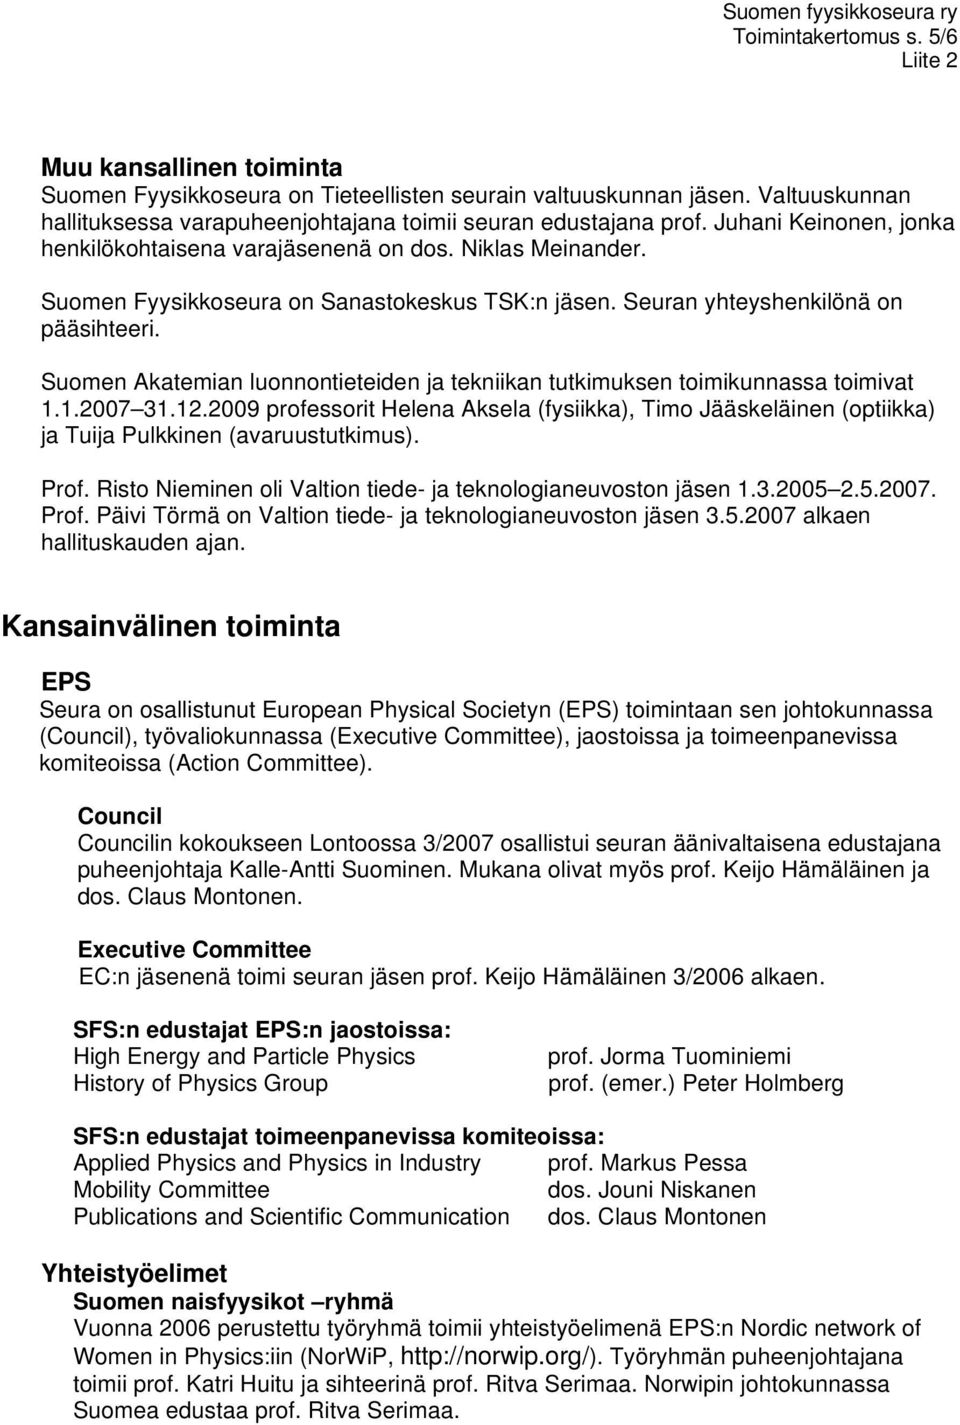 Suomen Akatemian luonnontieteiden ja tekniikan tutkimuksen toimikunnassa toimivat 1.1.2007 31.12.